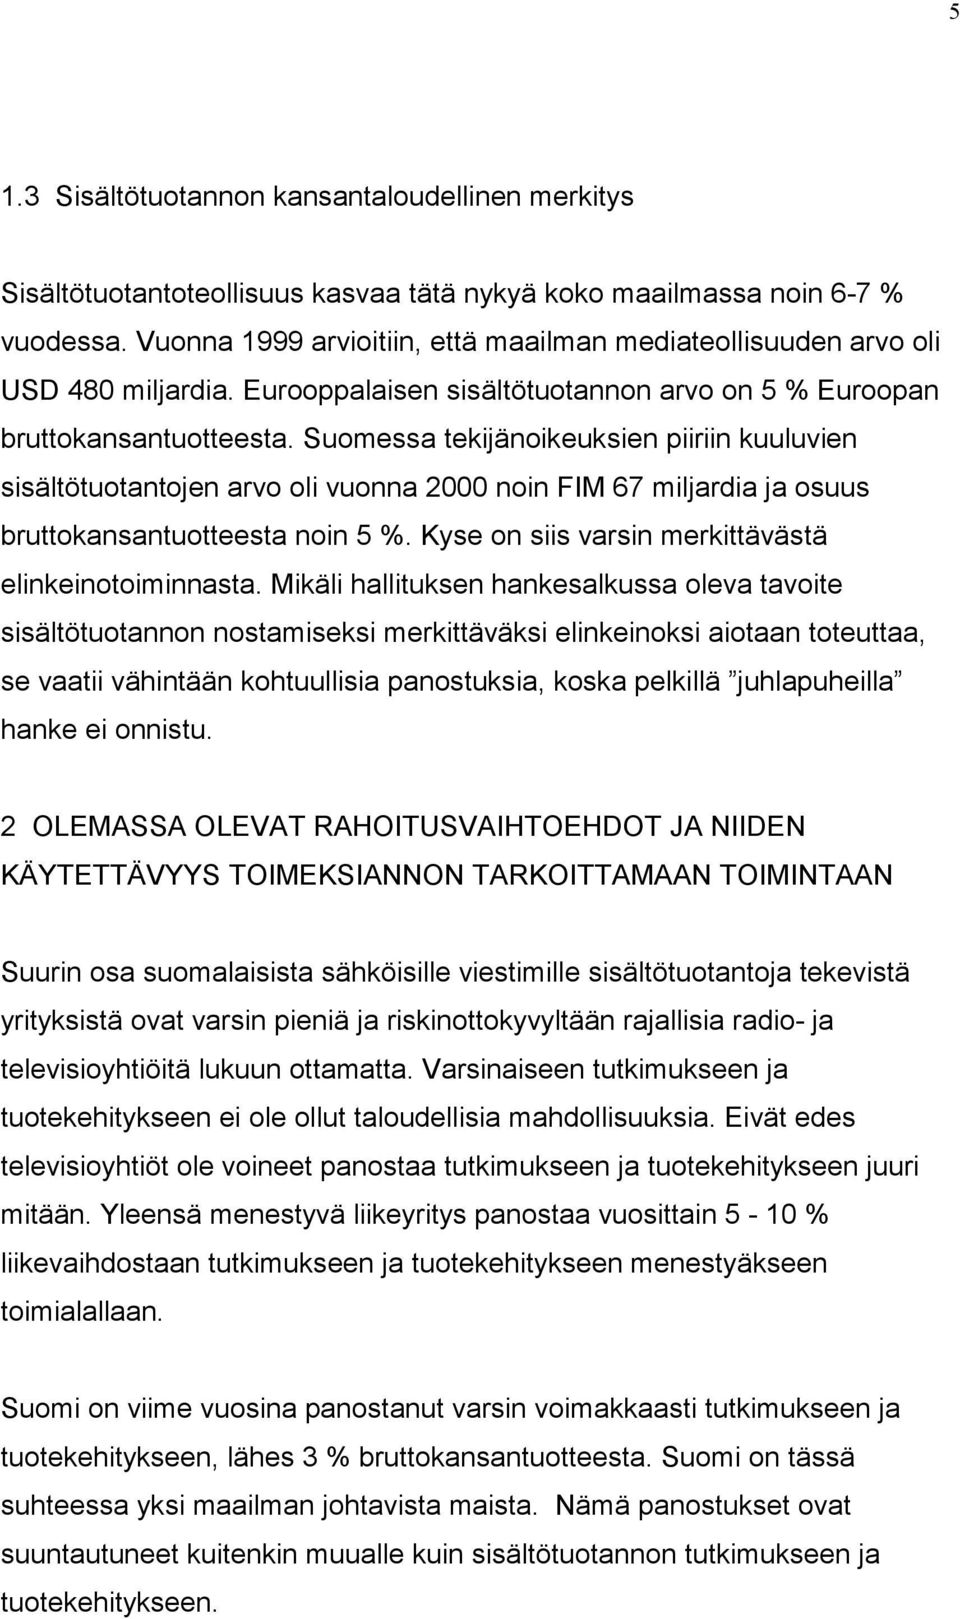 Suomessa tekijänoikeuksien piiriin kuuluvien sisältötuotantojen arvo oli vuonna 2000 noin FIM 67 miljardia ja osuus bruttokansantuotteesta noin 5 %.